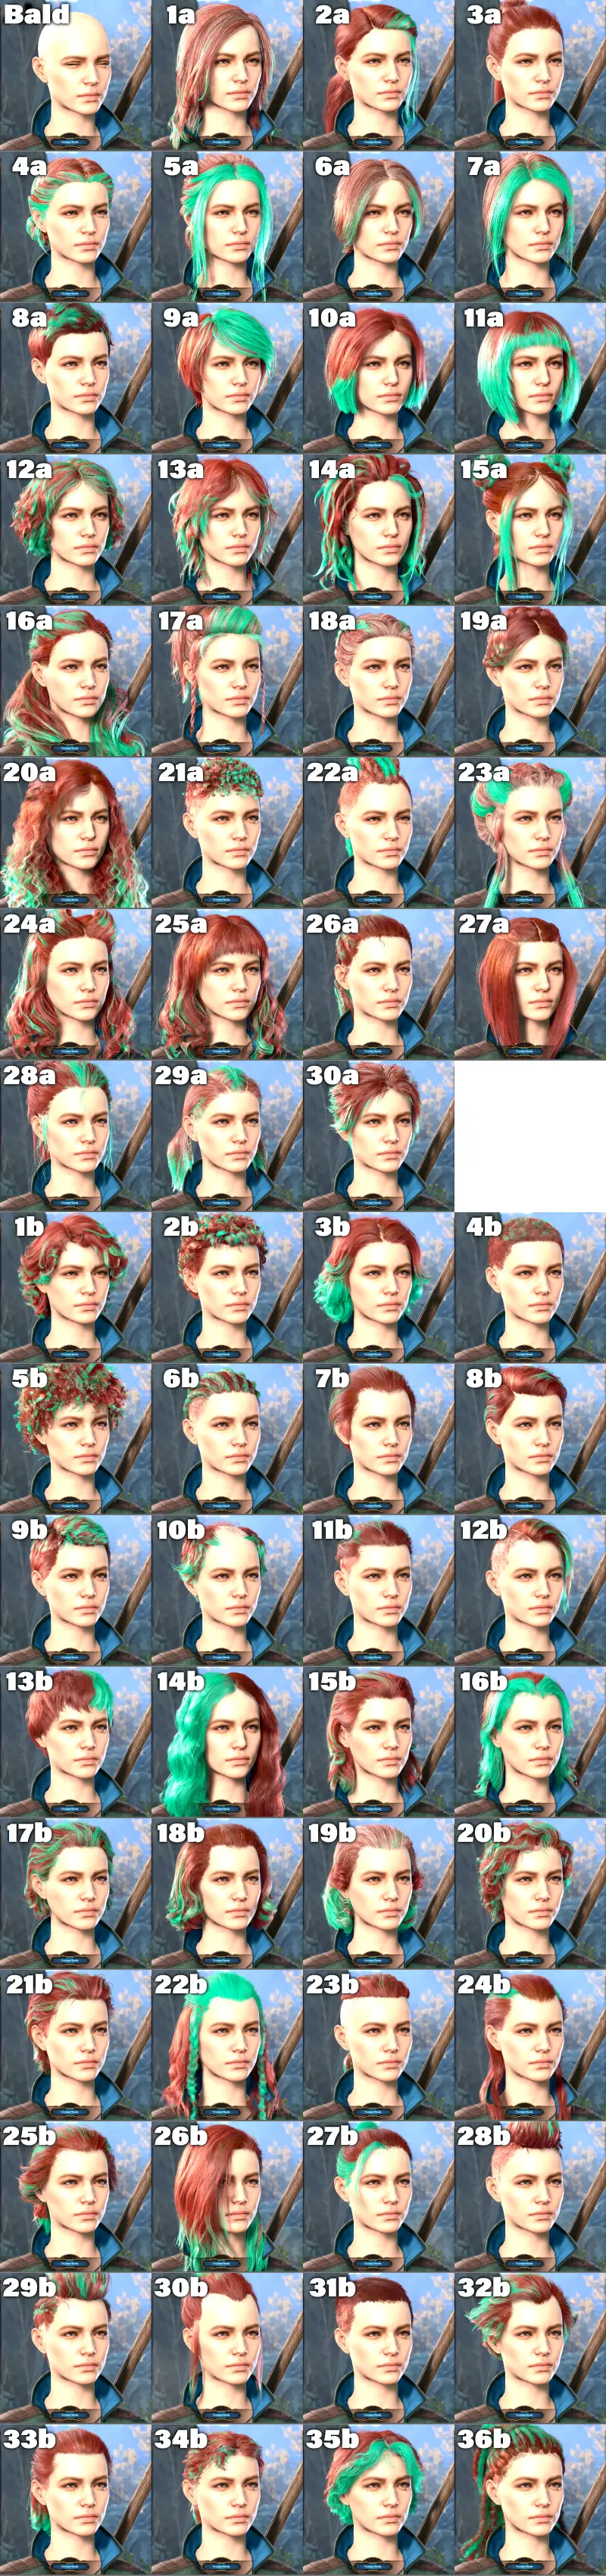 バルダーズゲート3の髪型 人間女性 67種類の一覧画像